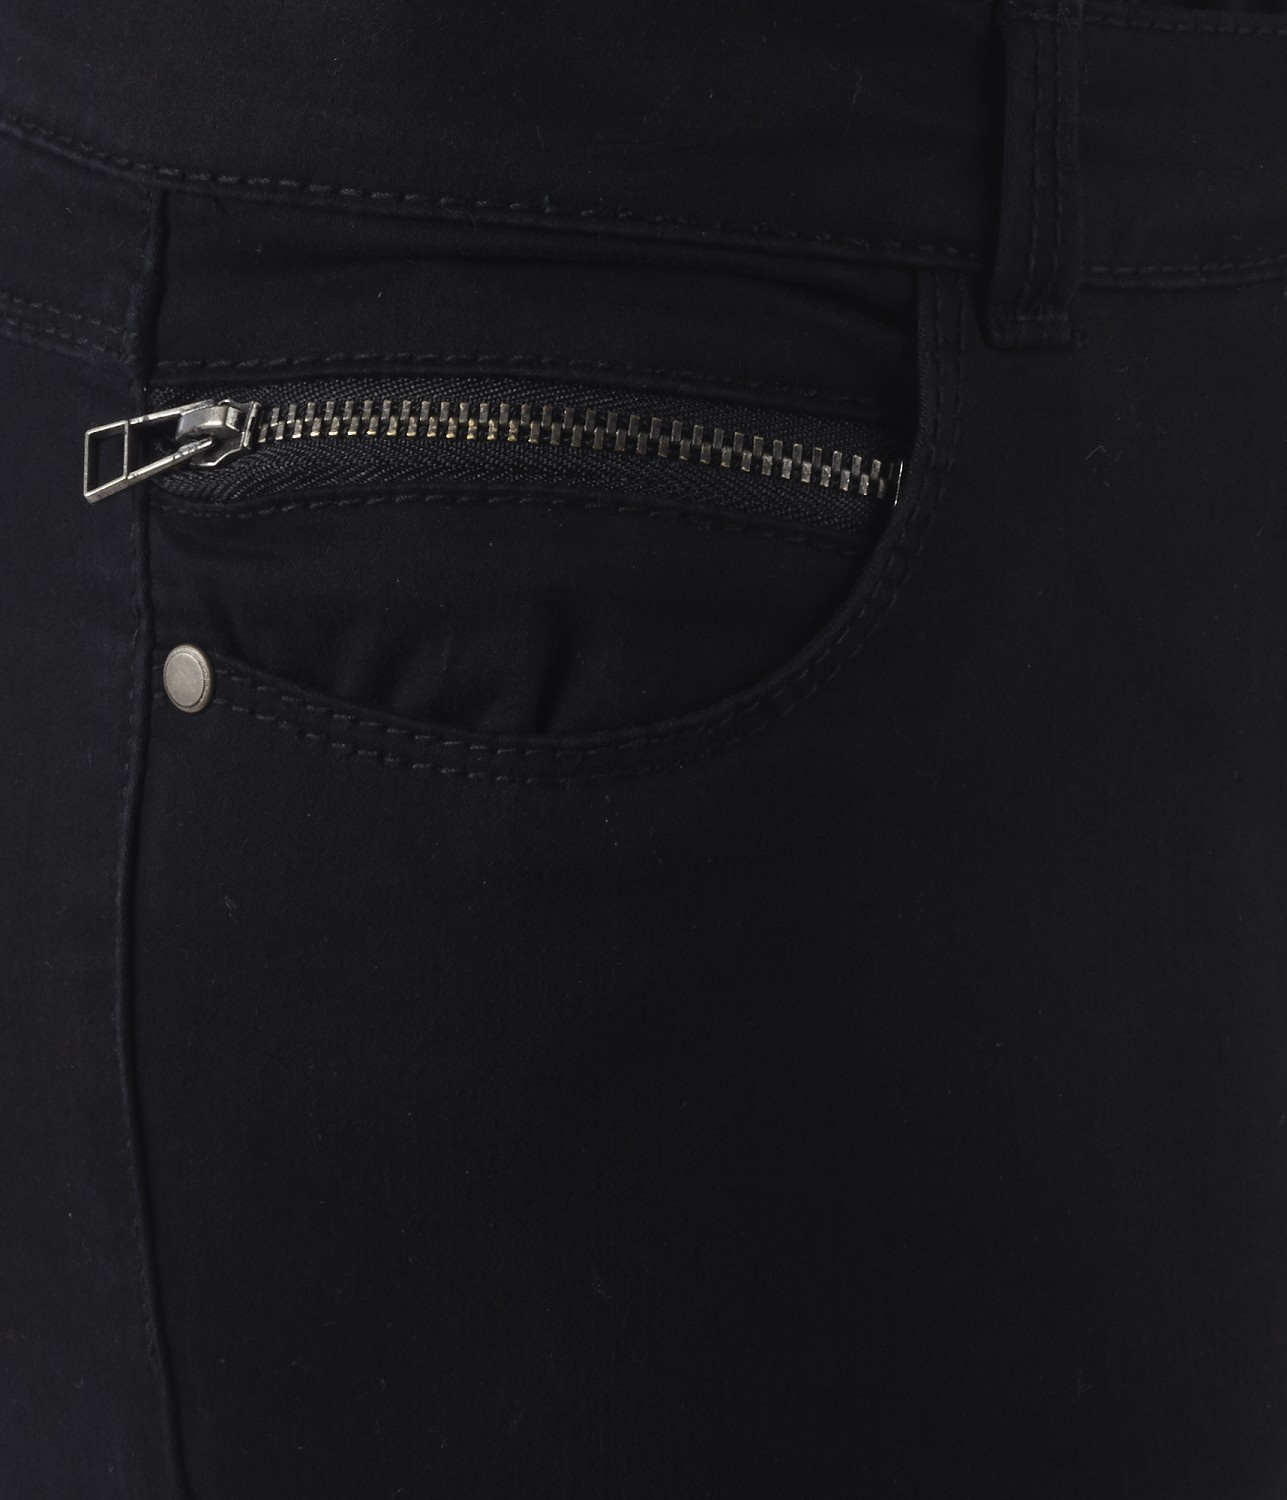 Camaieu fekete ruházat divatos hosszú nadrág 2013.8.9 fotója